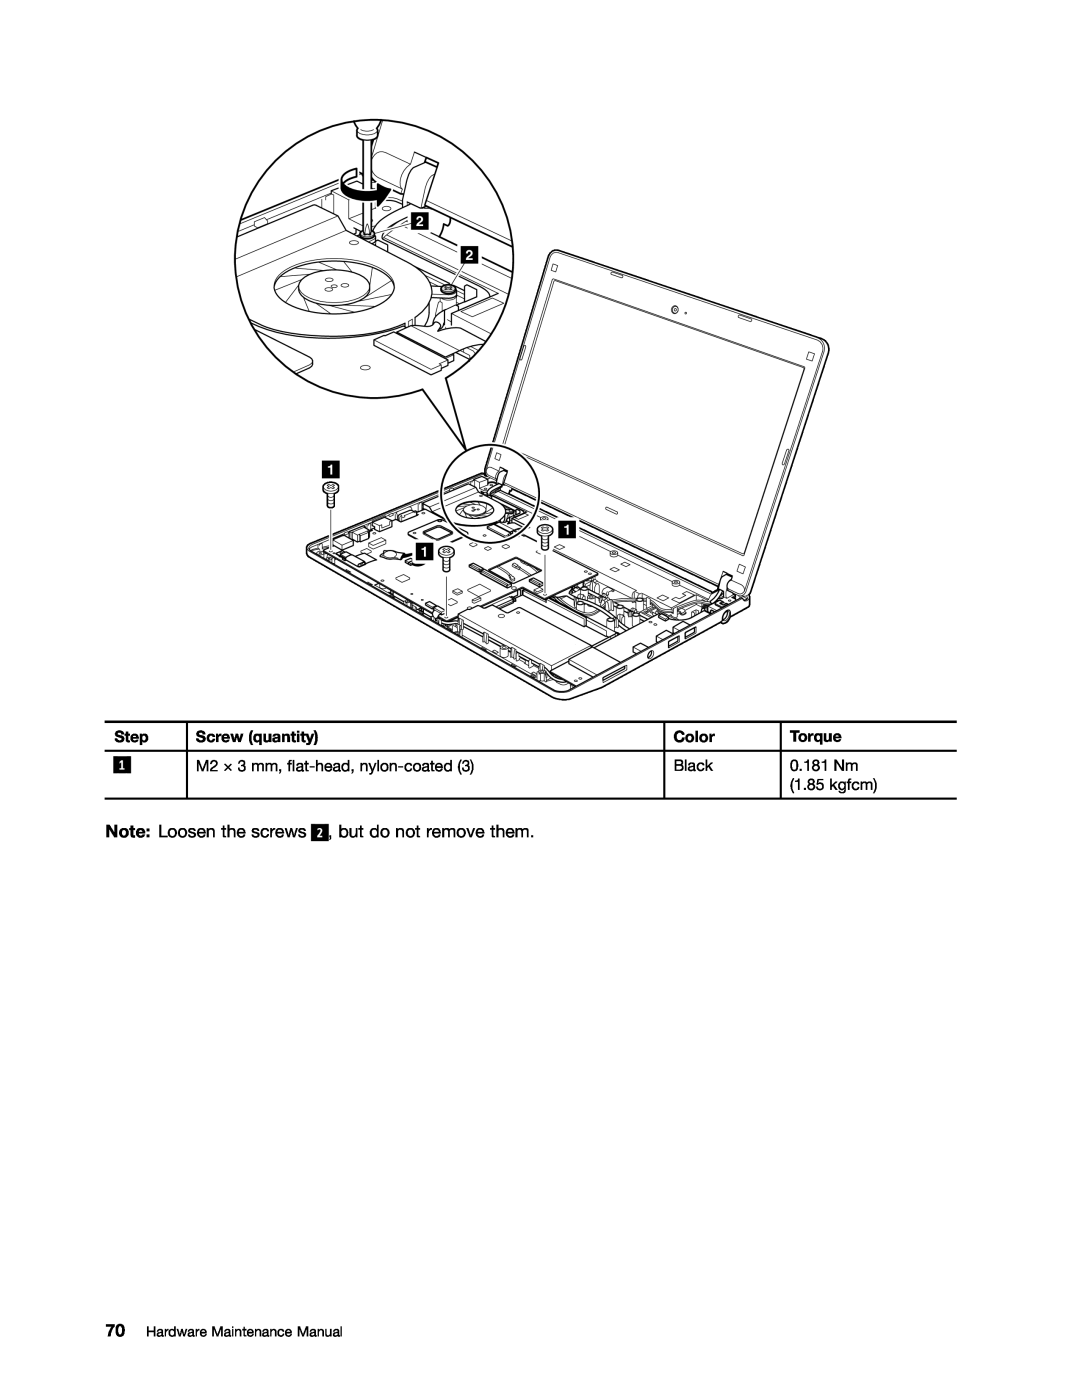 Lenovo E30, E31, EDGE 13 manual Note Loosen the screws, 2 , but do not remove them, Hardware Maintenance Manual 